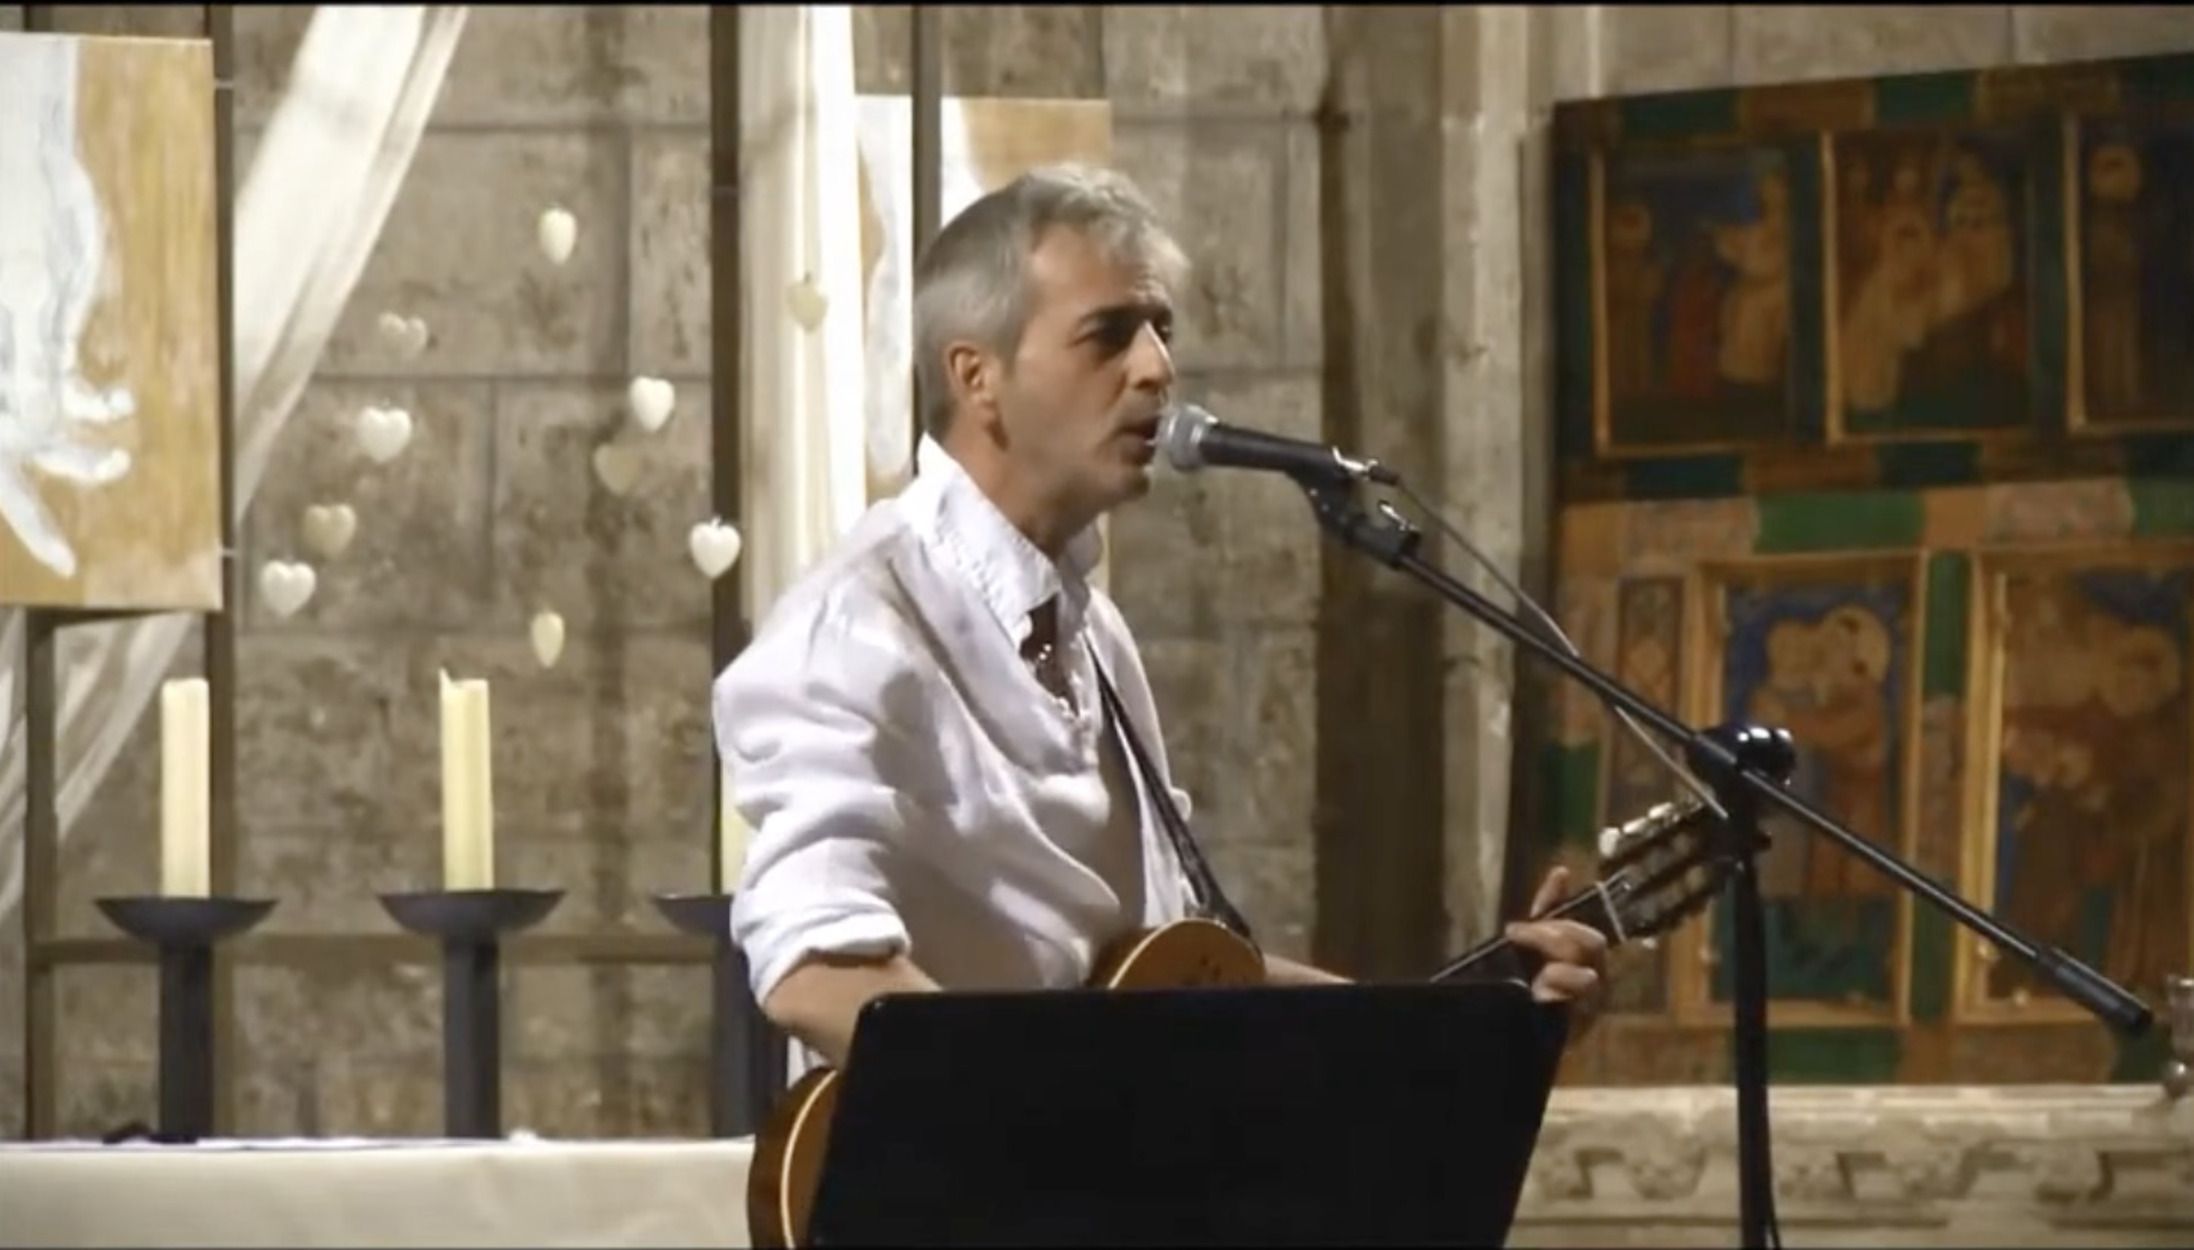 Fallece Javier Sánchez, el sacerdote cantautor de Zaragoza, tras prenderse su ropa con una vela